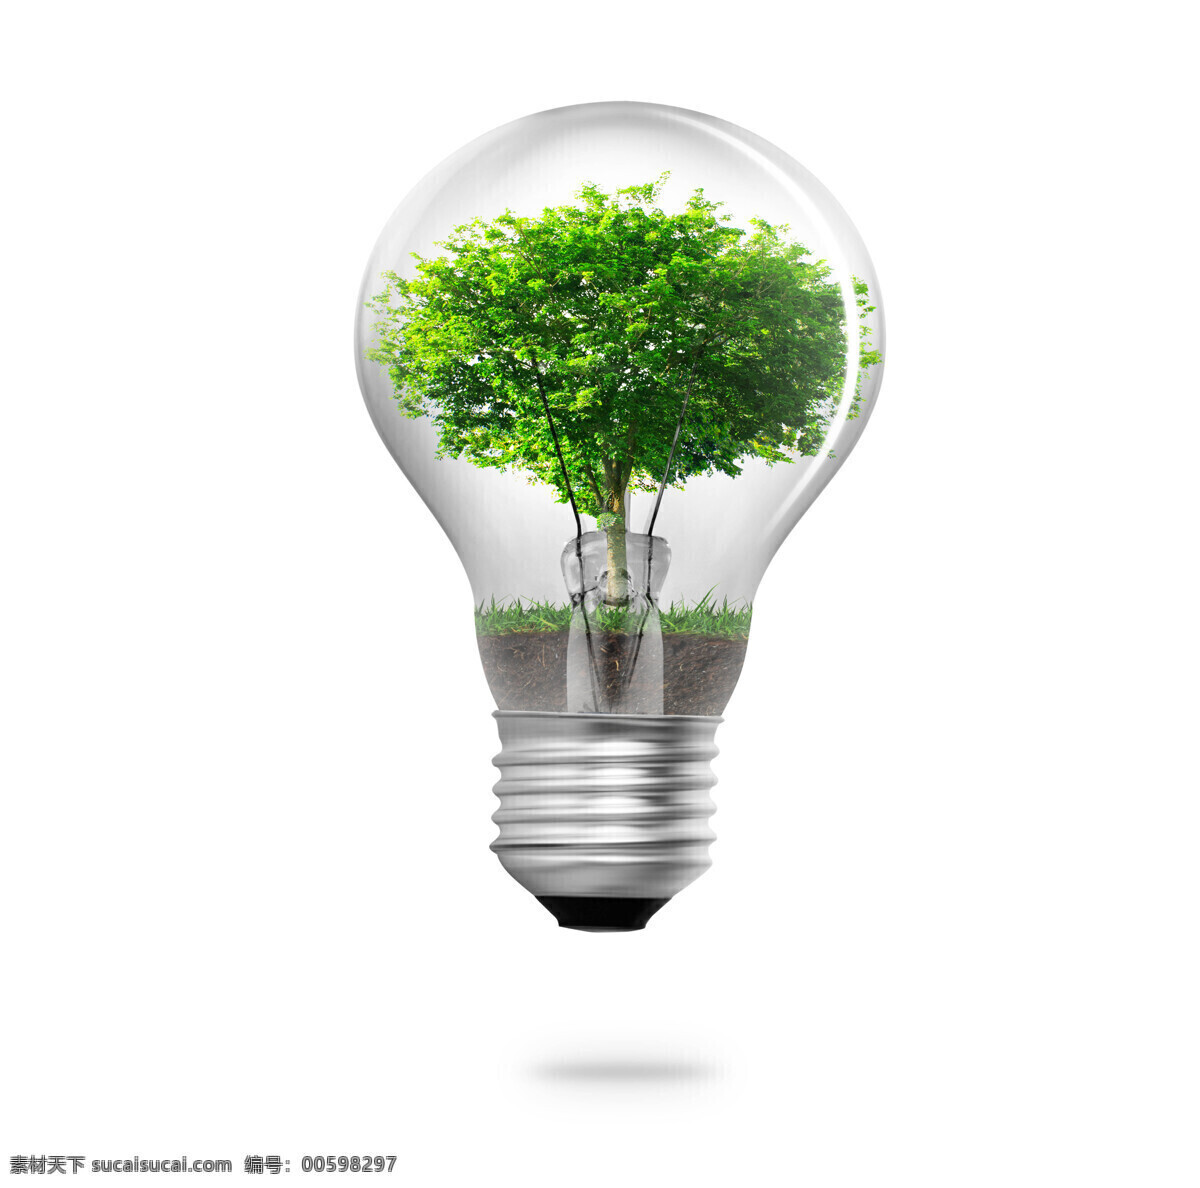 长 灯泡 里 一棵树 树 绿叶 土 草地 家具电器 生活百科